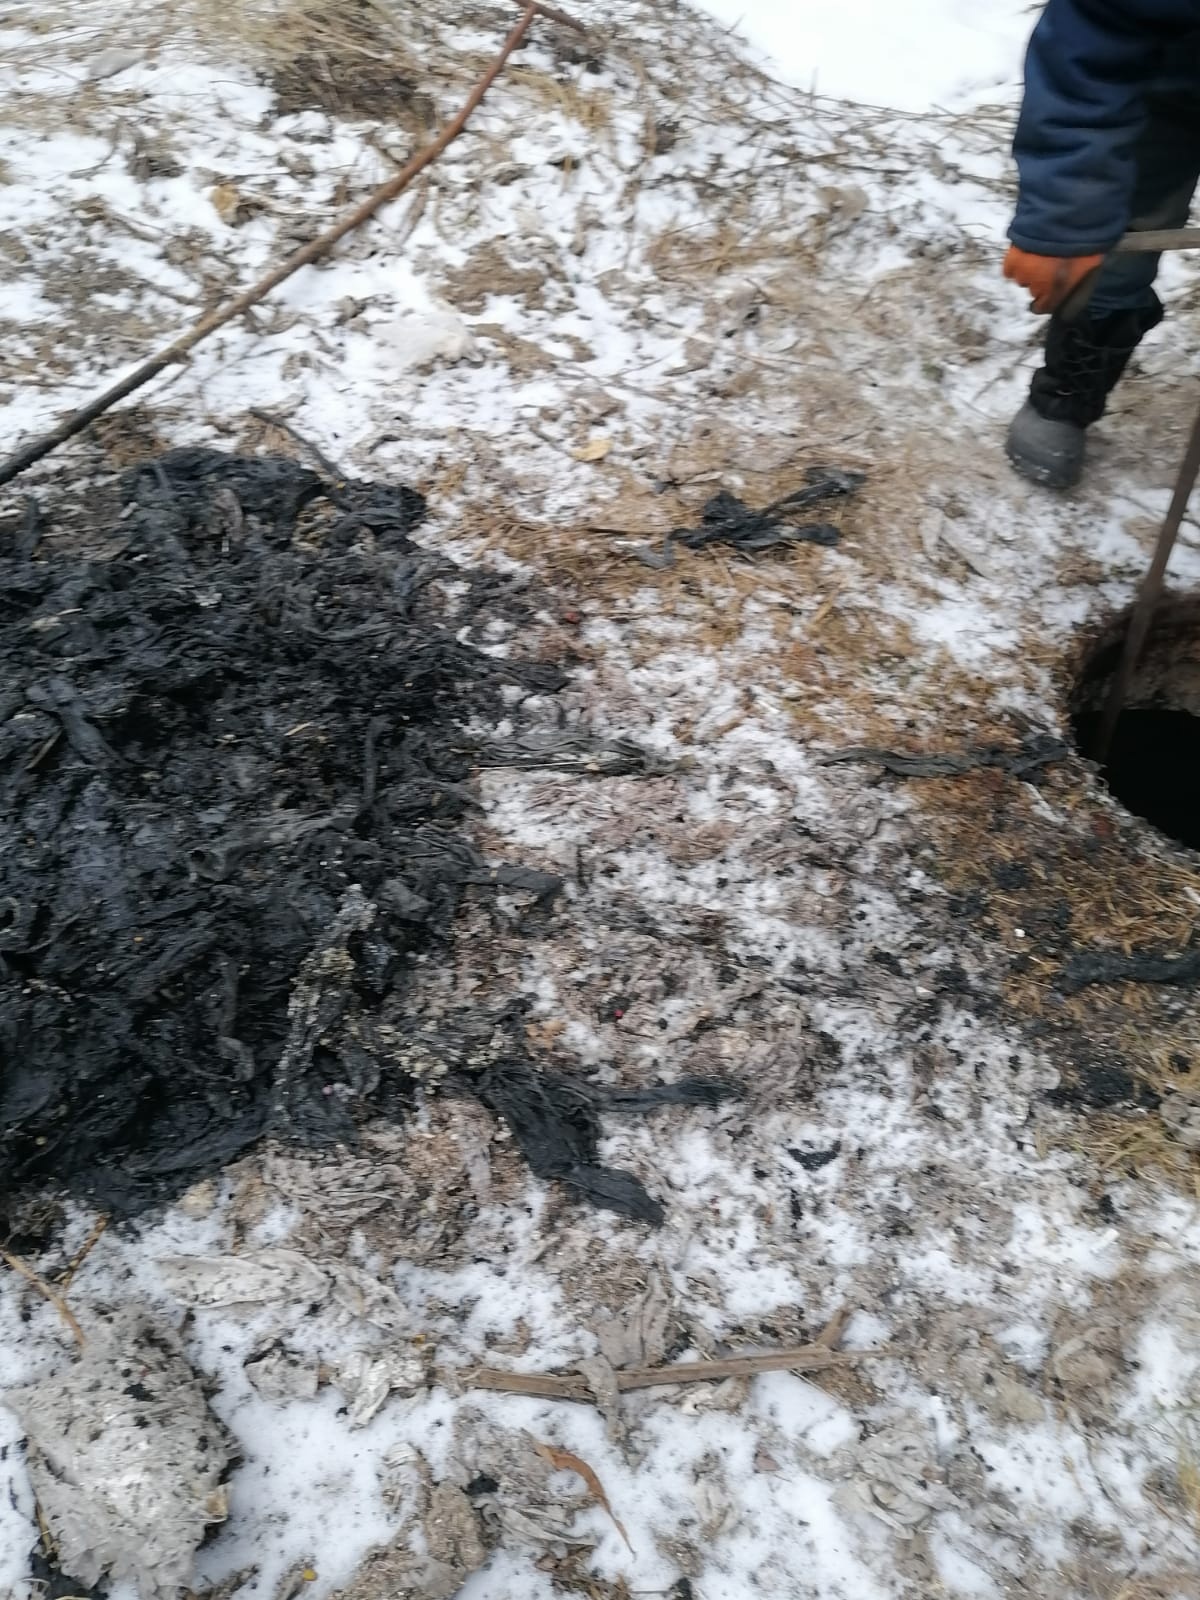 Кучу грязи и хлама достали из канализации в одном из районов Карелии